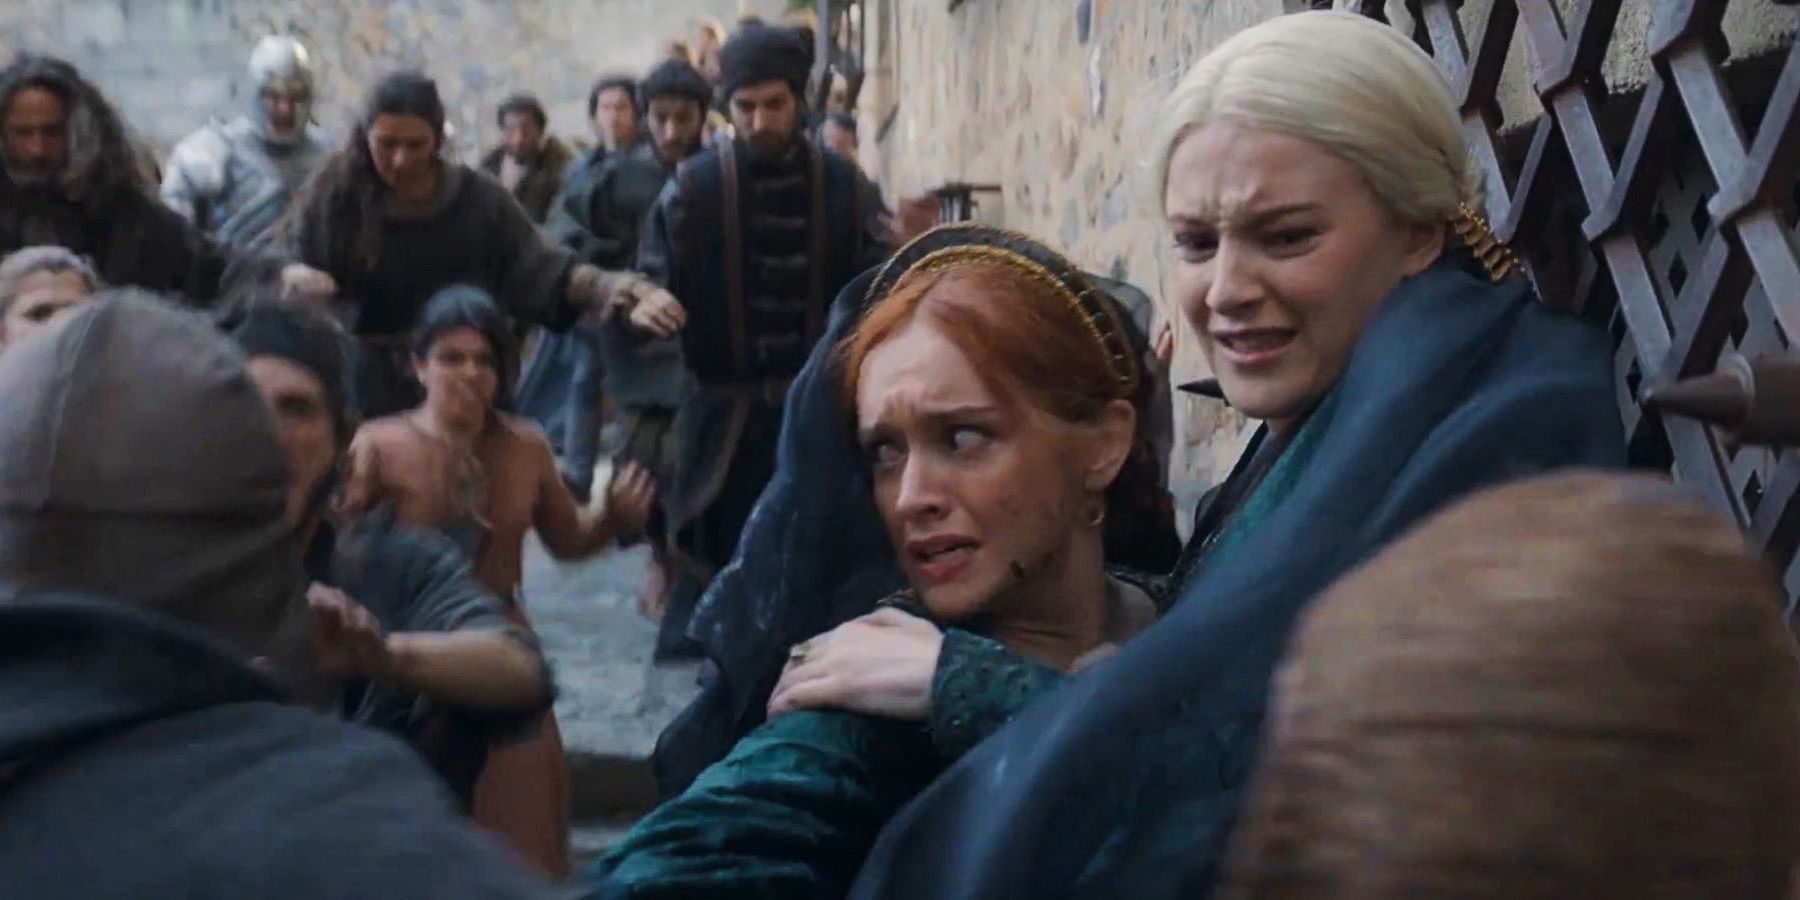 Helaena Targaryen e Alicent Hightower sendo cercadas por plebeus em House of the Dragon temporada 2, episódio 6